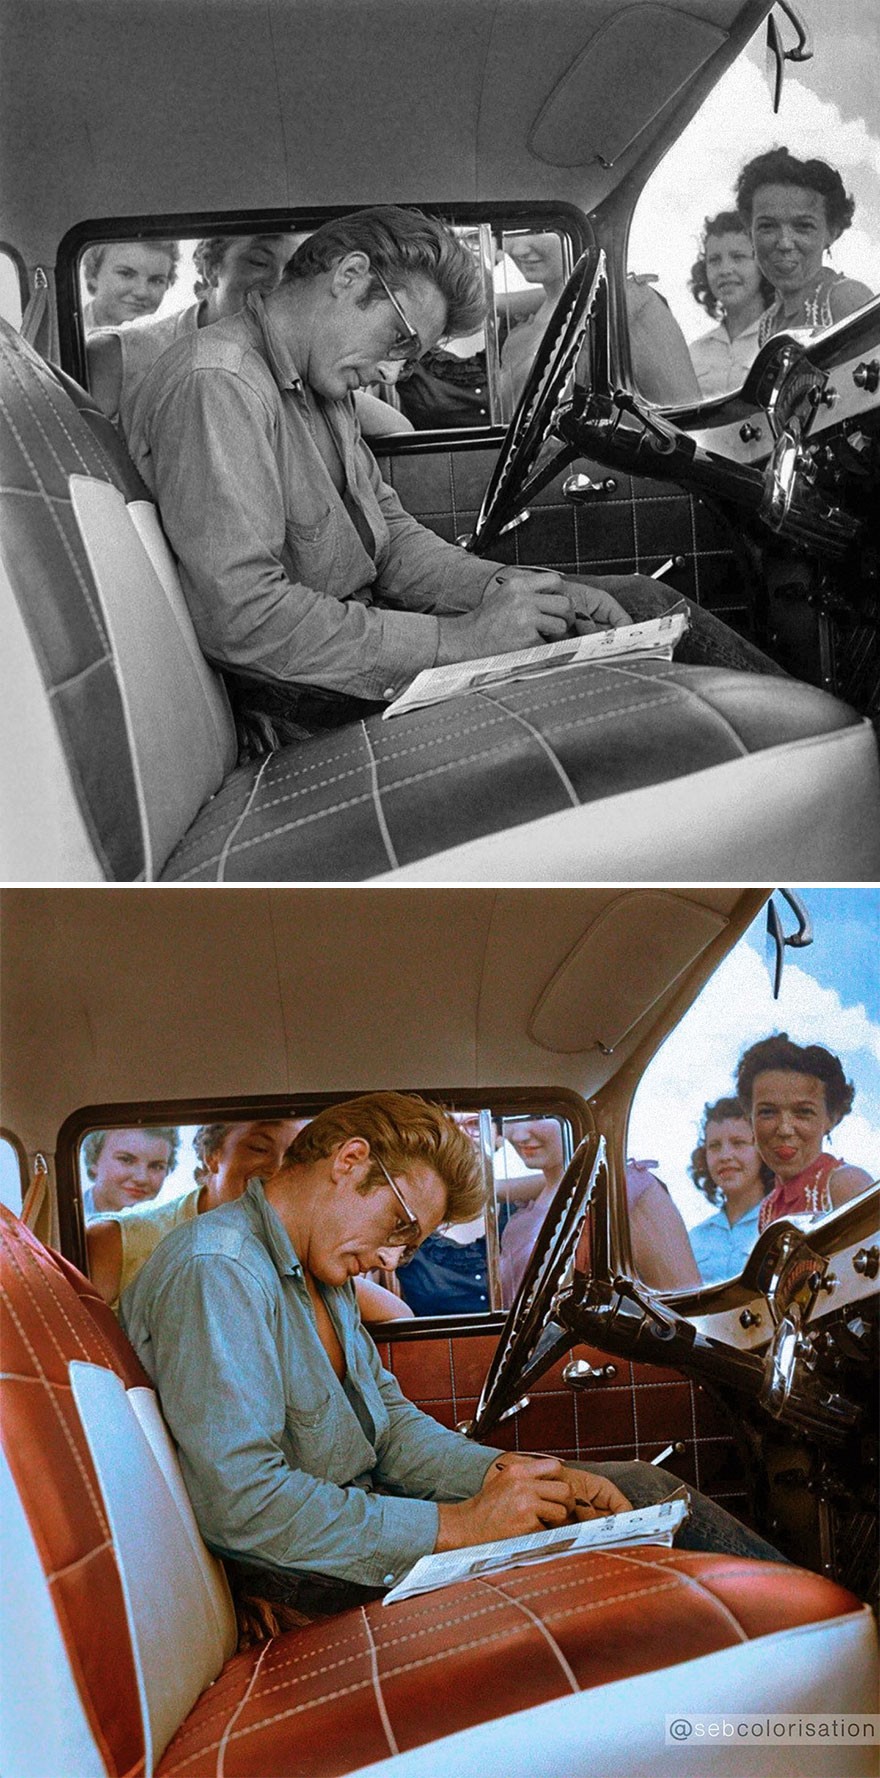 8. Джеймс Дин раздает автографы в своей машине в Марфе, штат Техас. Фото Ричарда Миллера, июль 1955 года